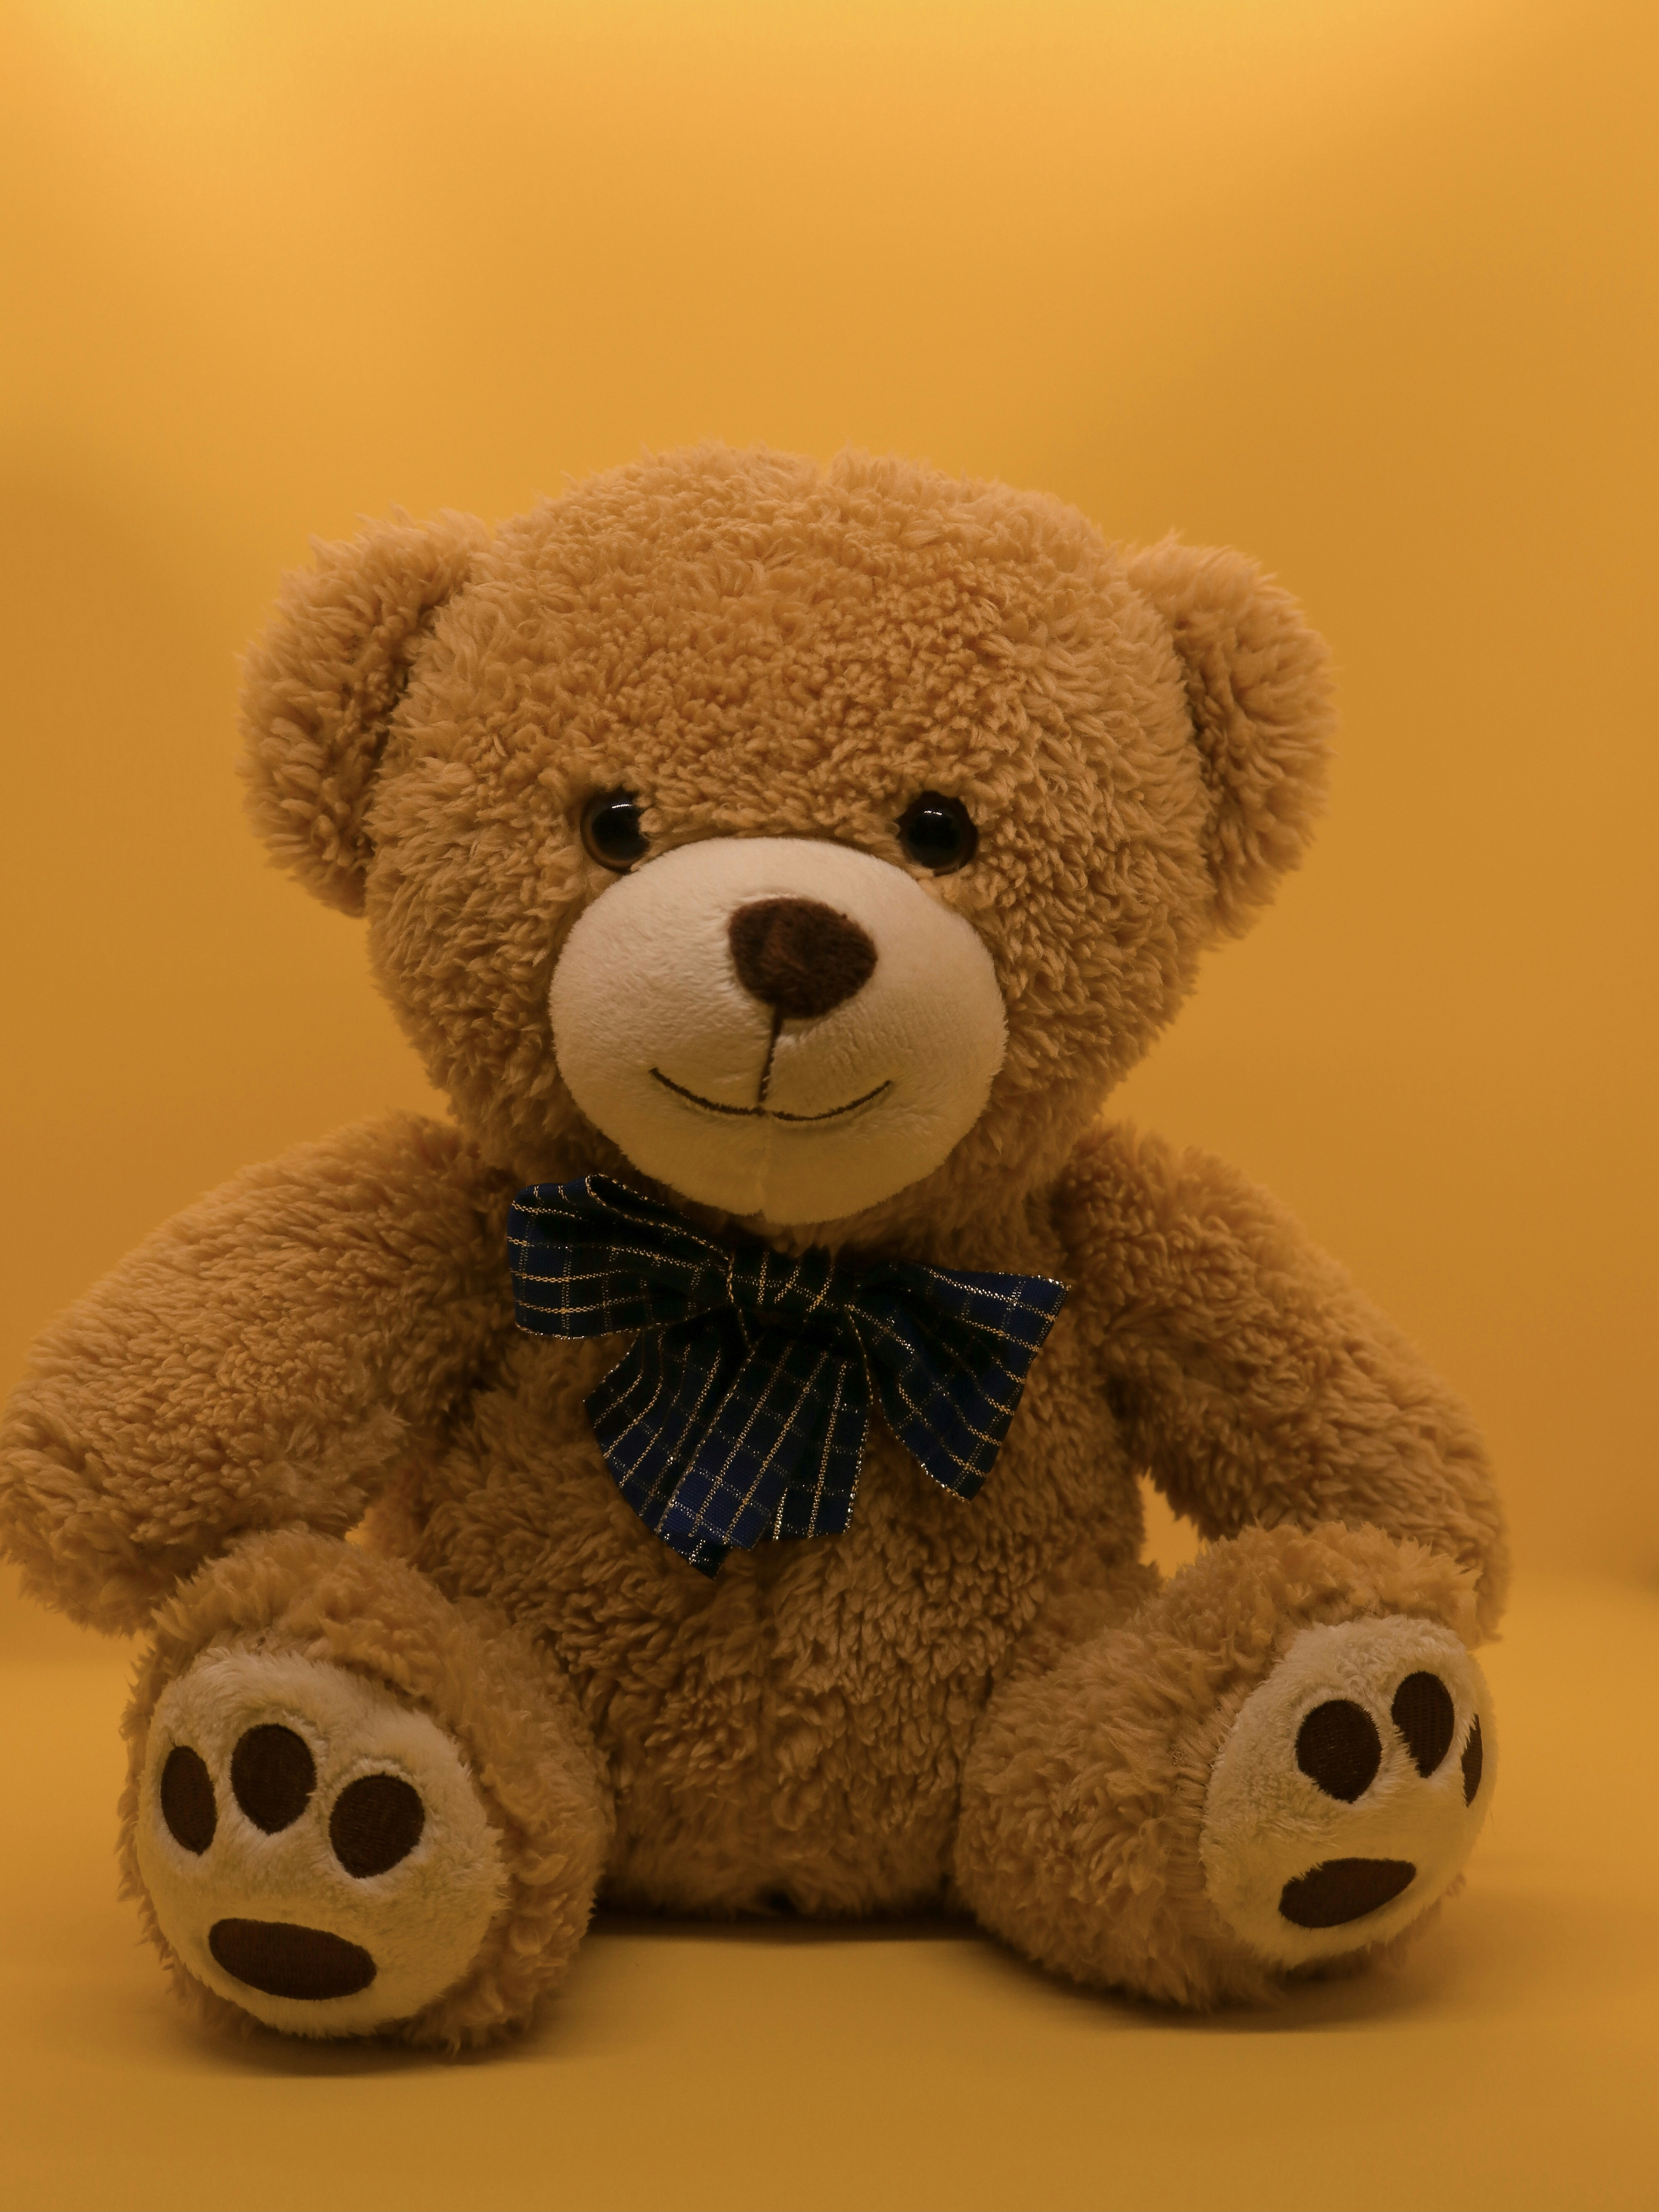 Cute Teddy